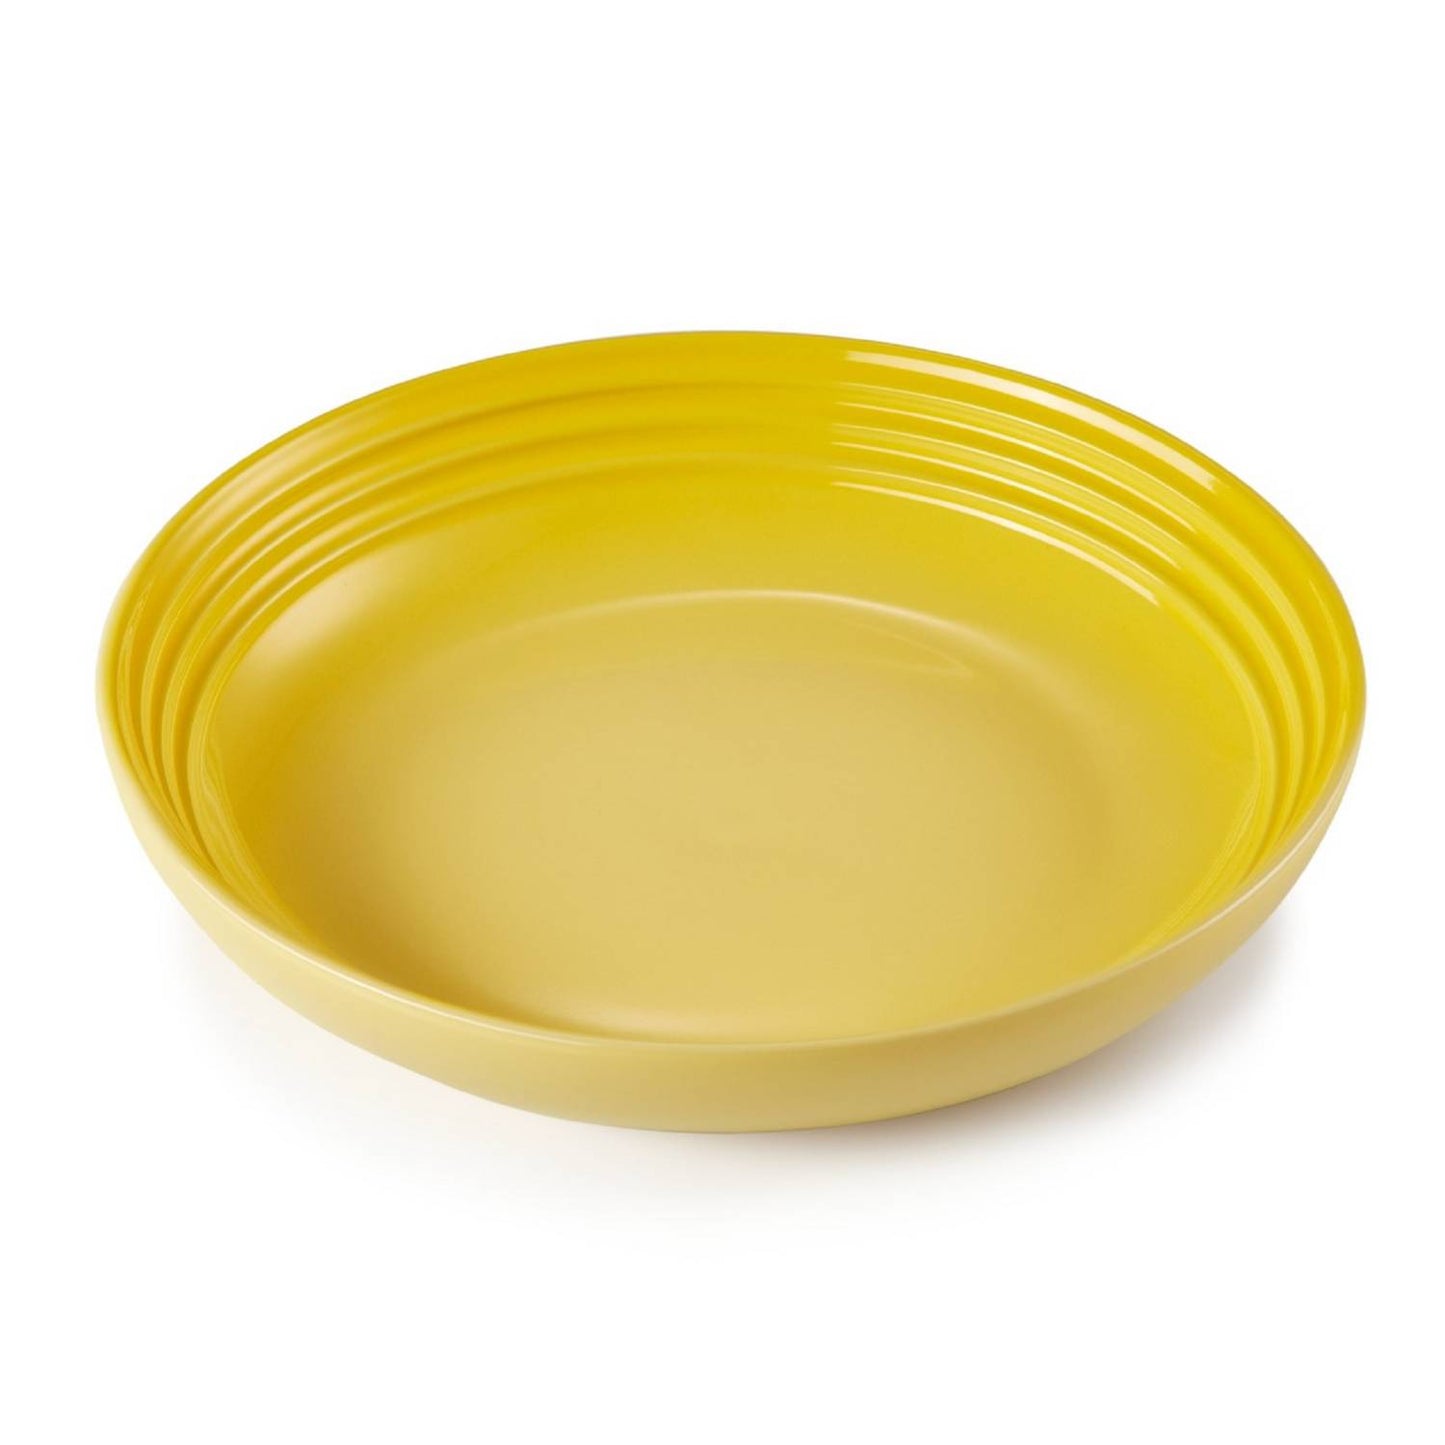 plato-chicago-30cm-amarillo-soleil-le-creuset